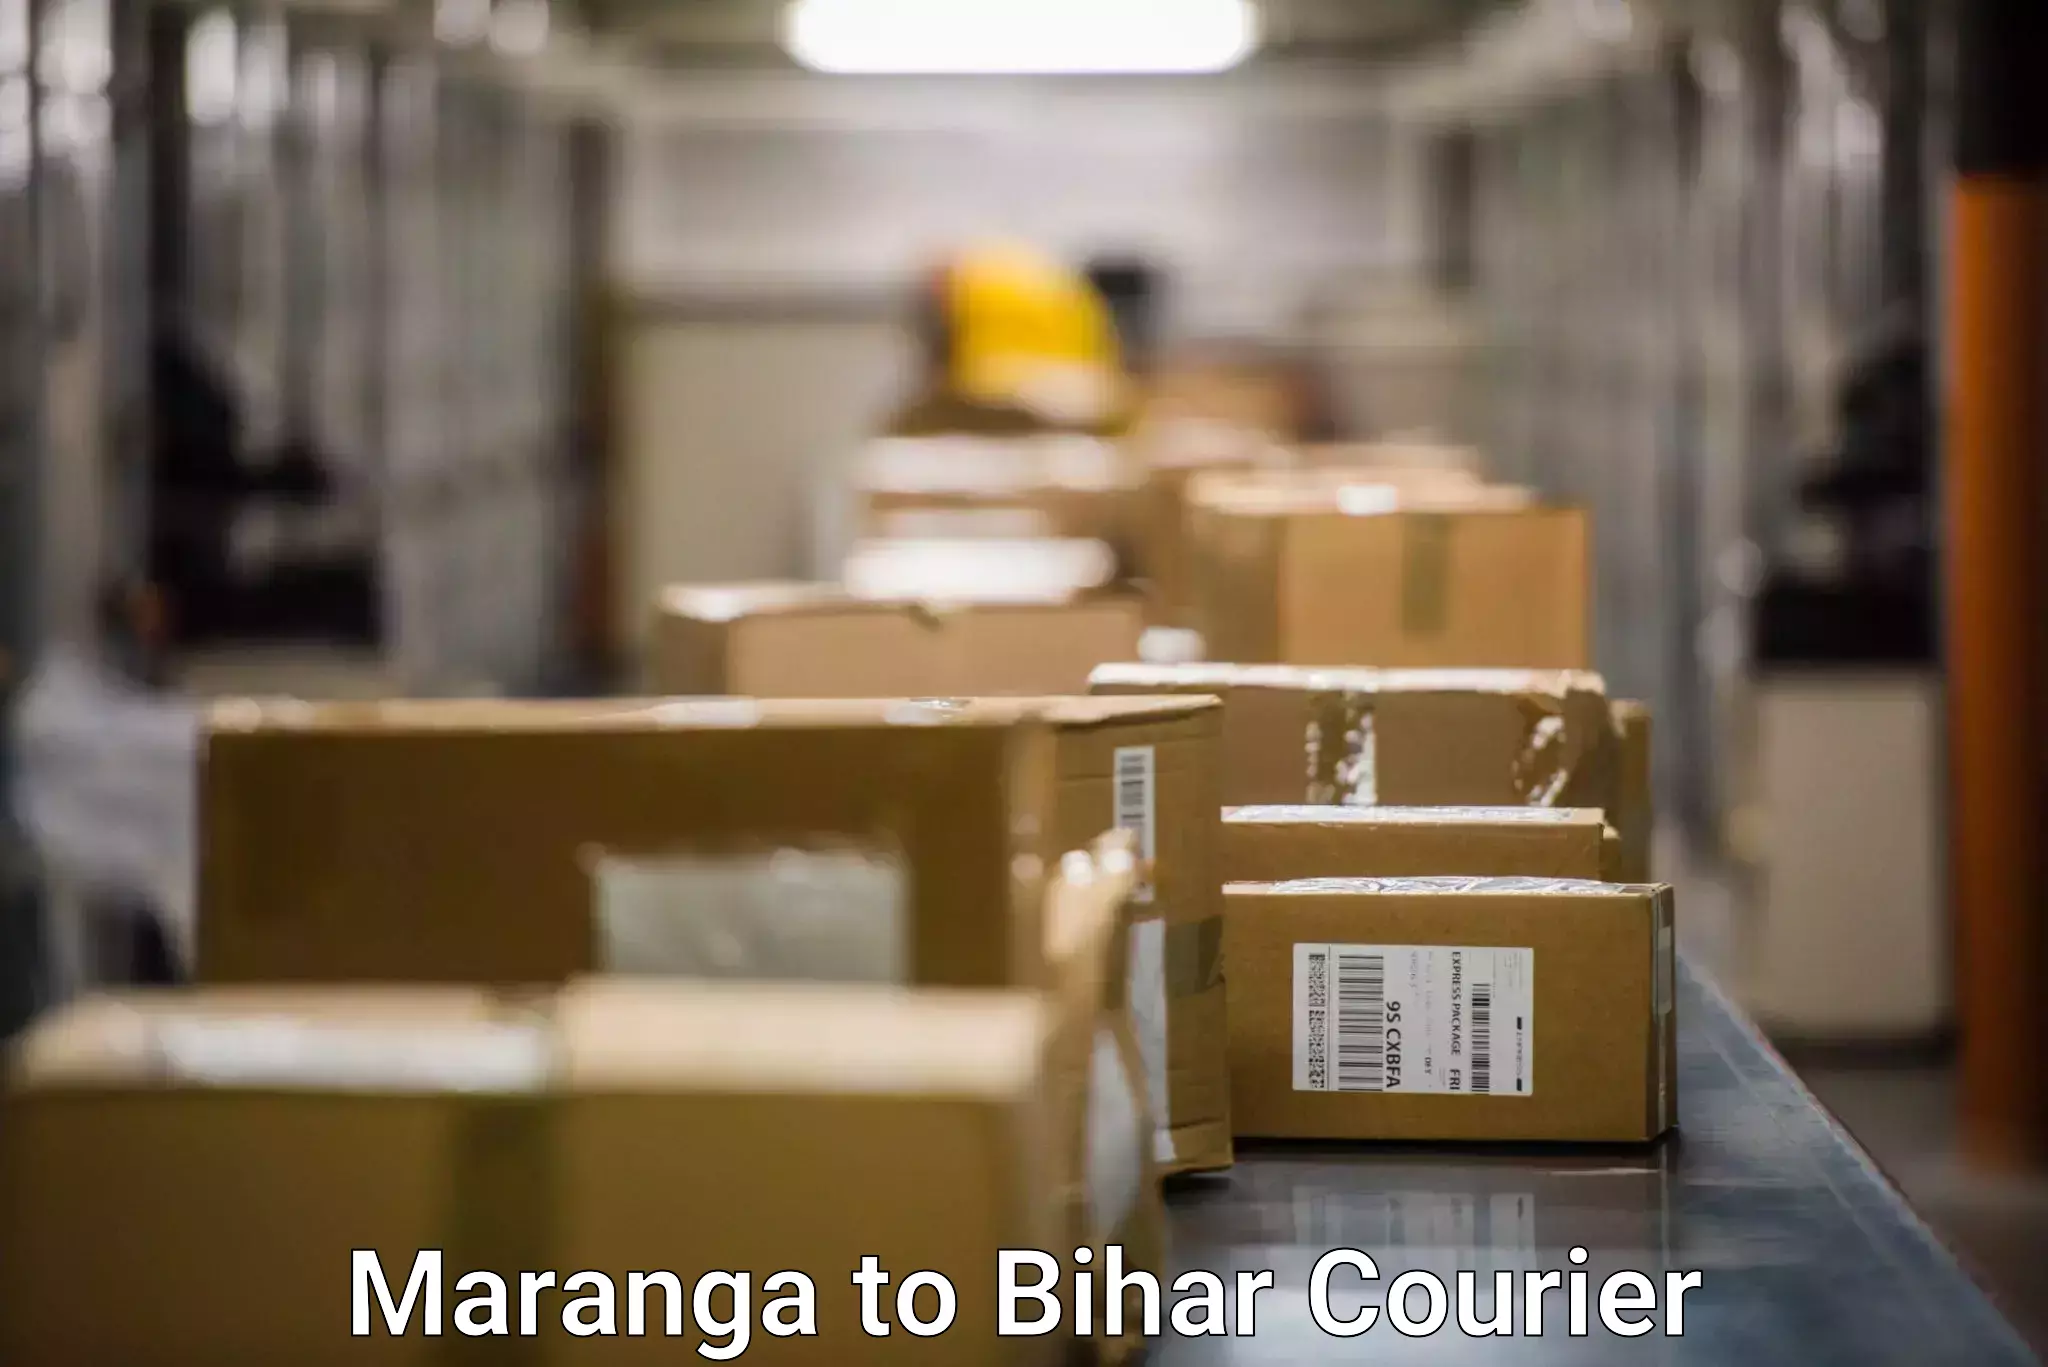 Doorstep delivery service Maranga to Nalanda